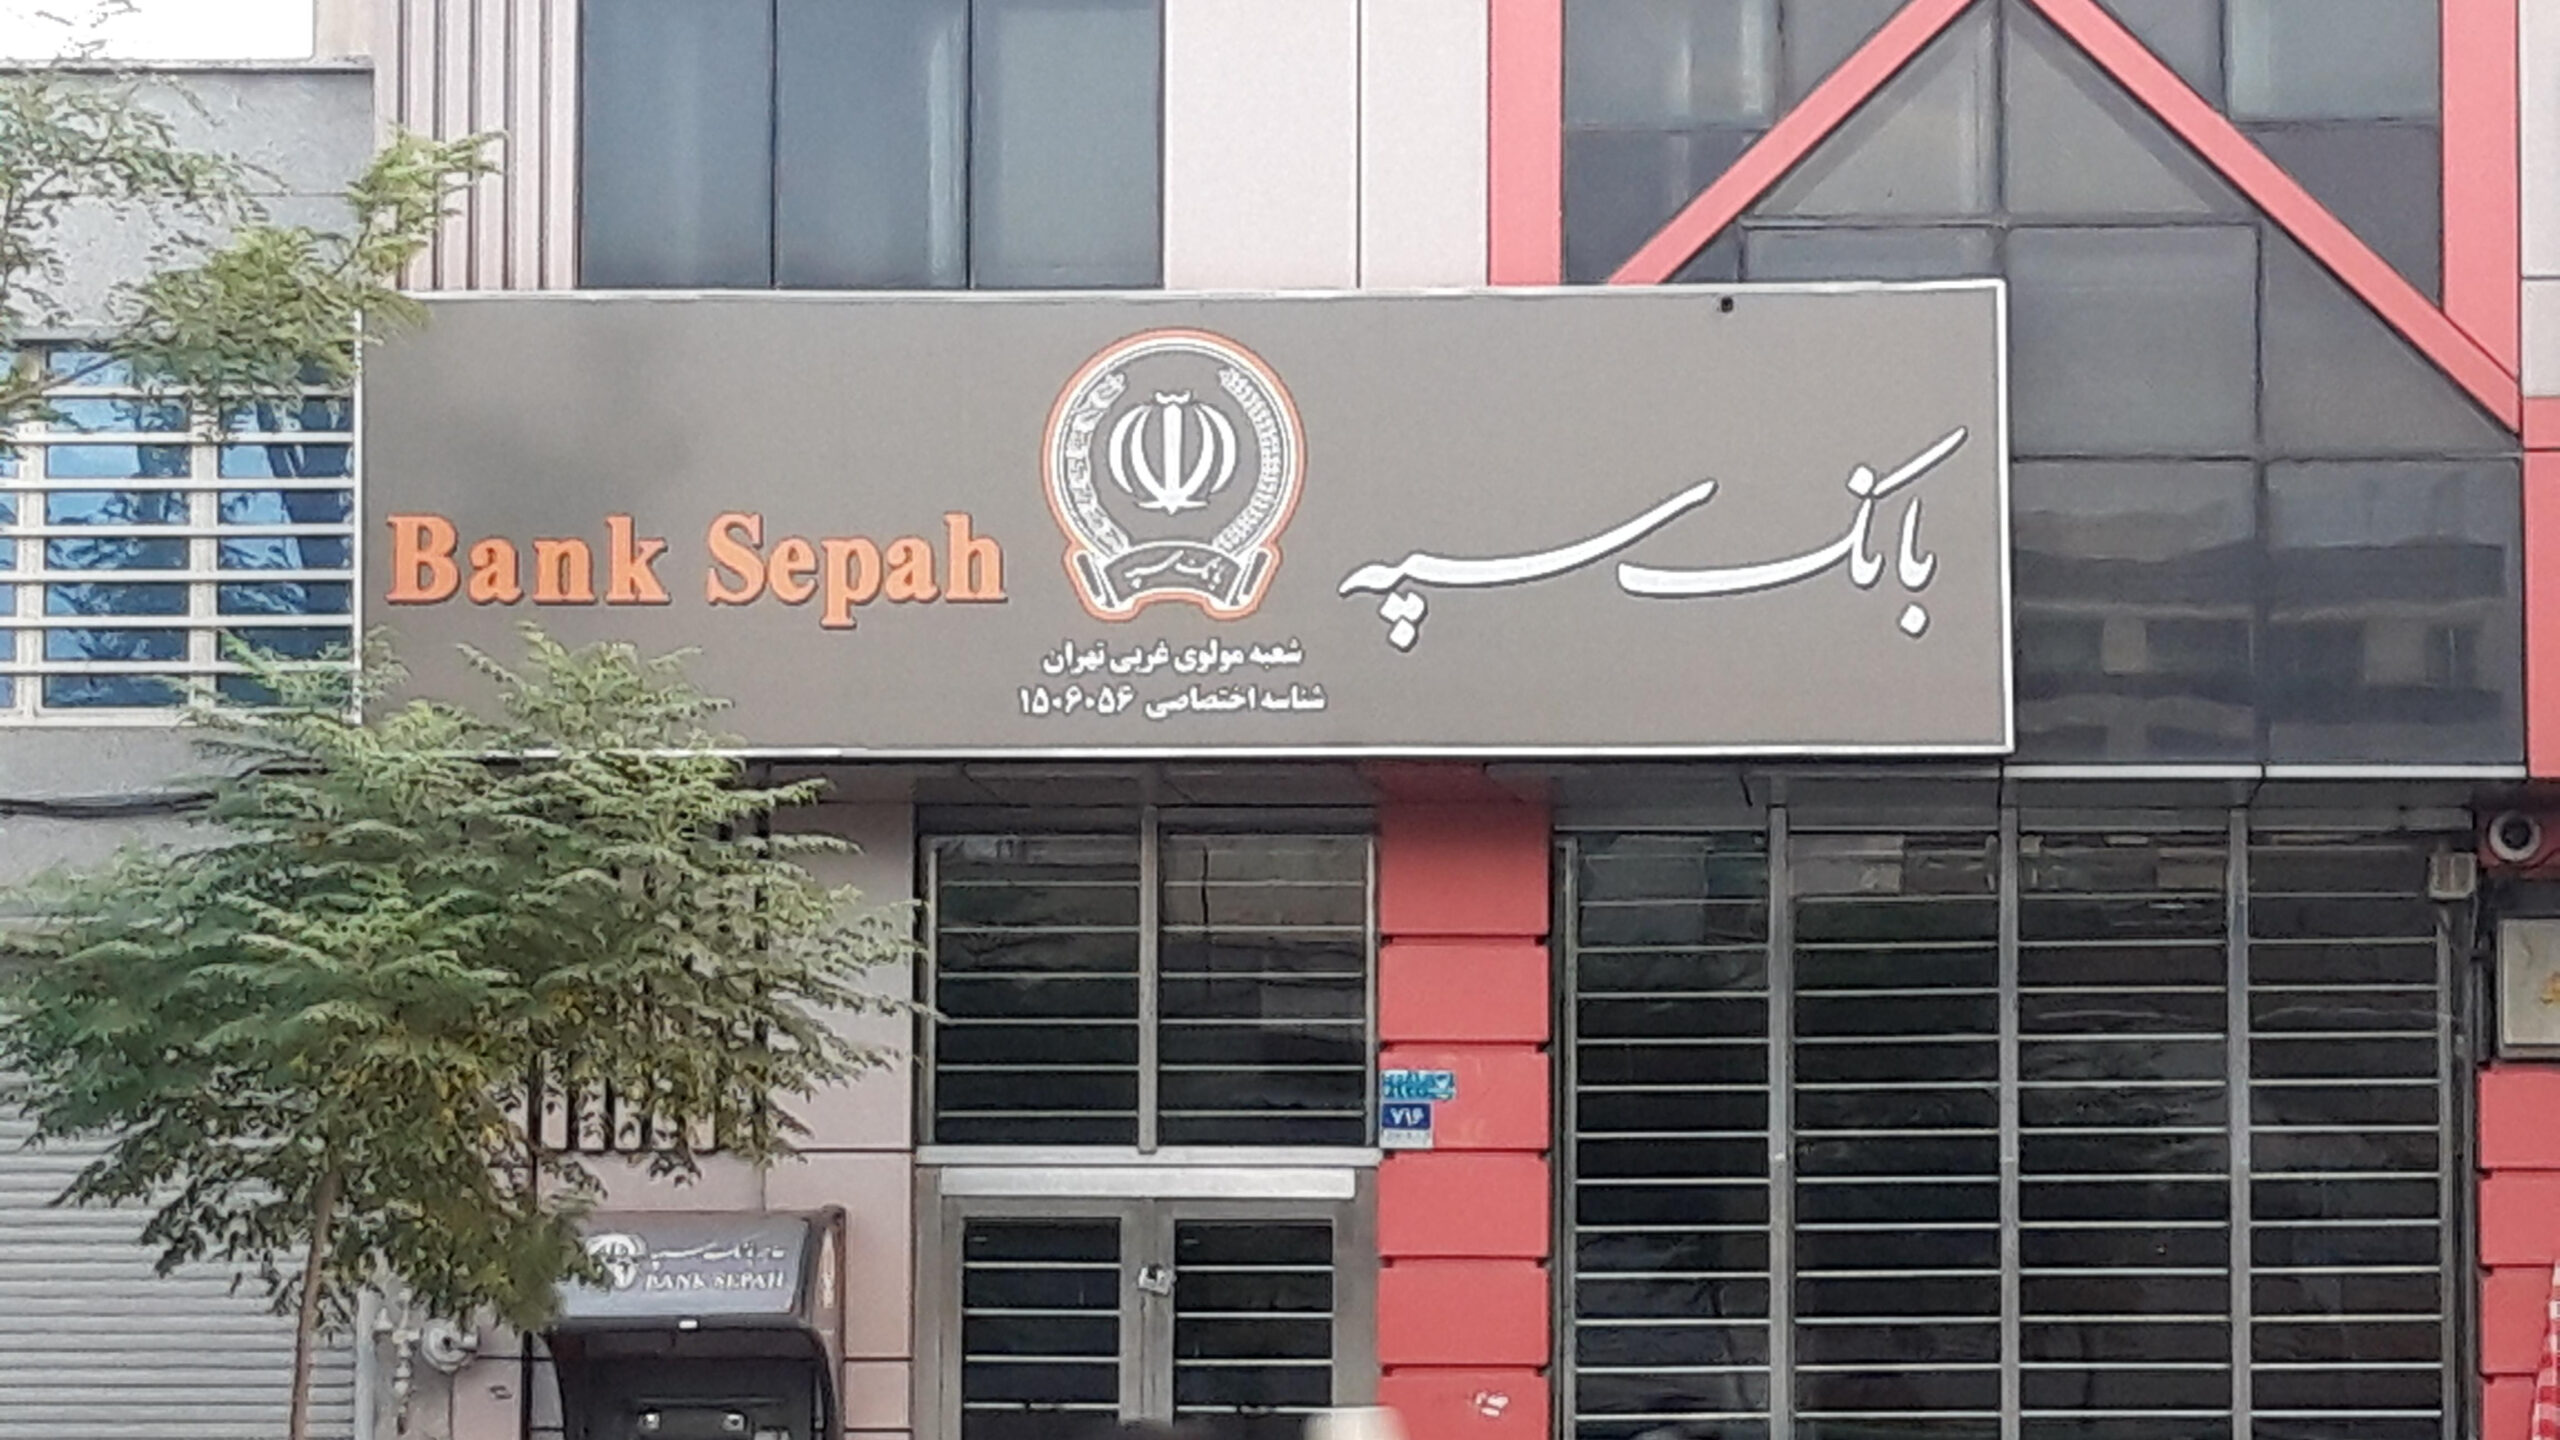 بانک سپه در راس بانک های پرداخت کننده تسهیلات بدون ضامن قرار گرفت